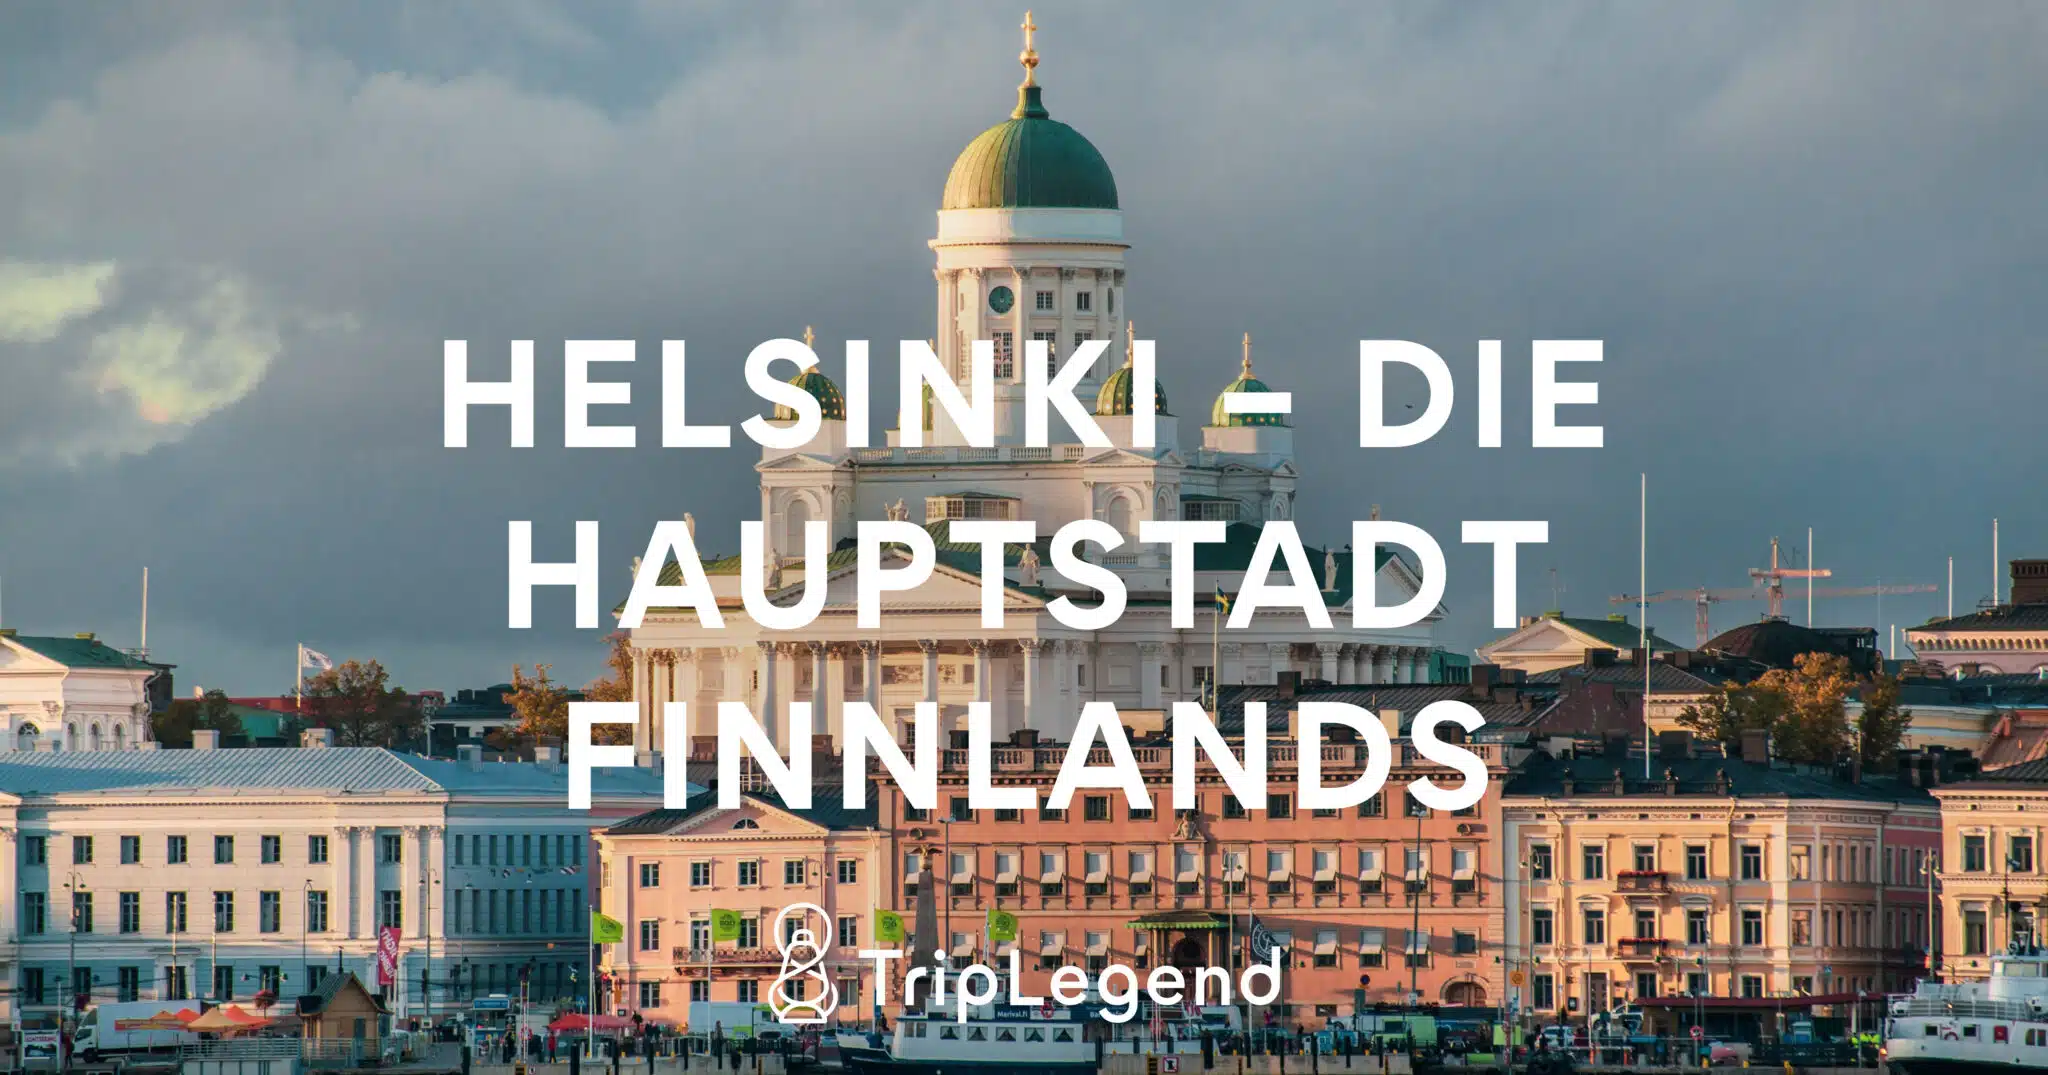 Helsingfors - Finlands huvudstad1 Skalad.jpg